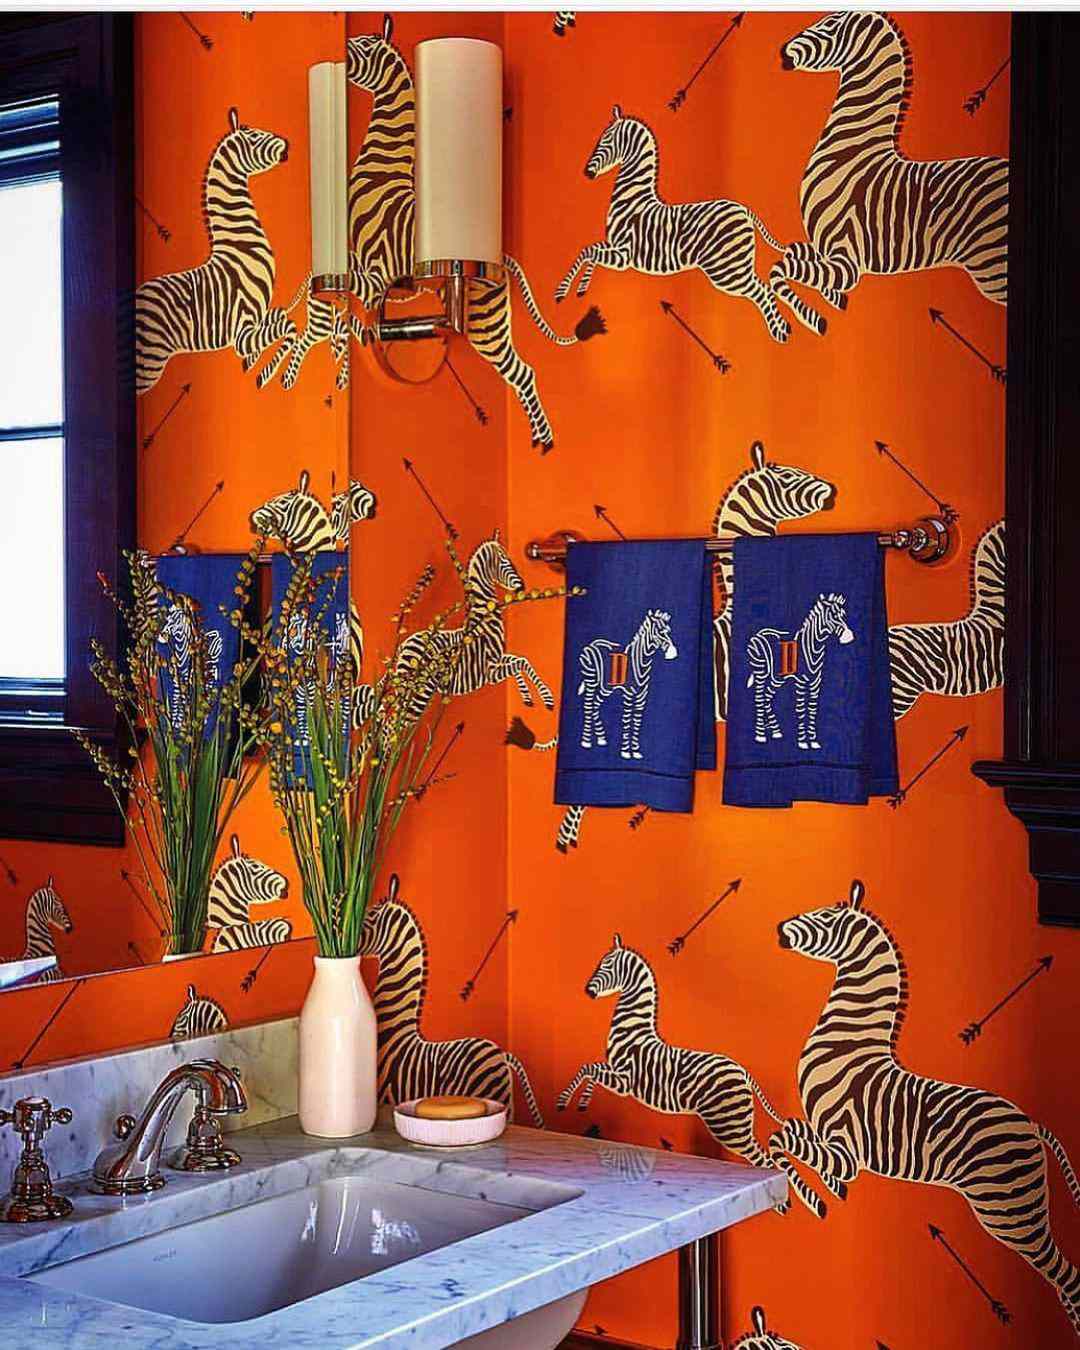 Zebras Wallpapers